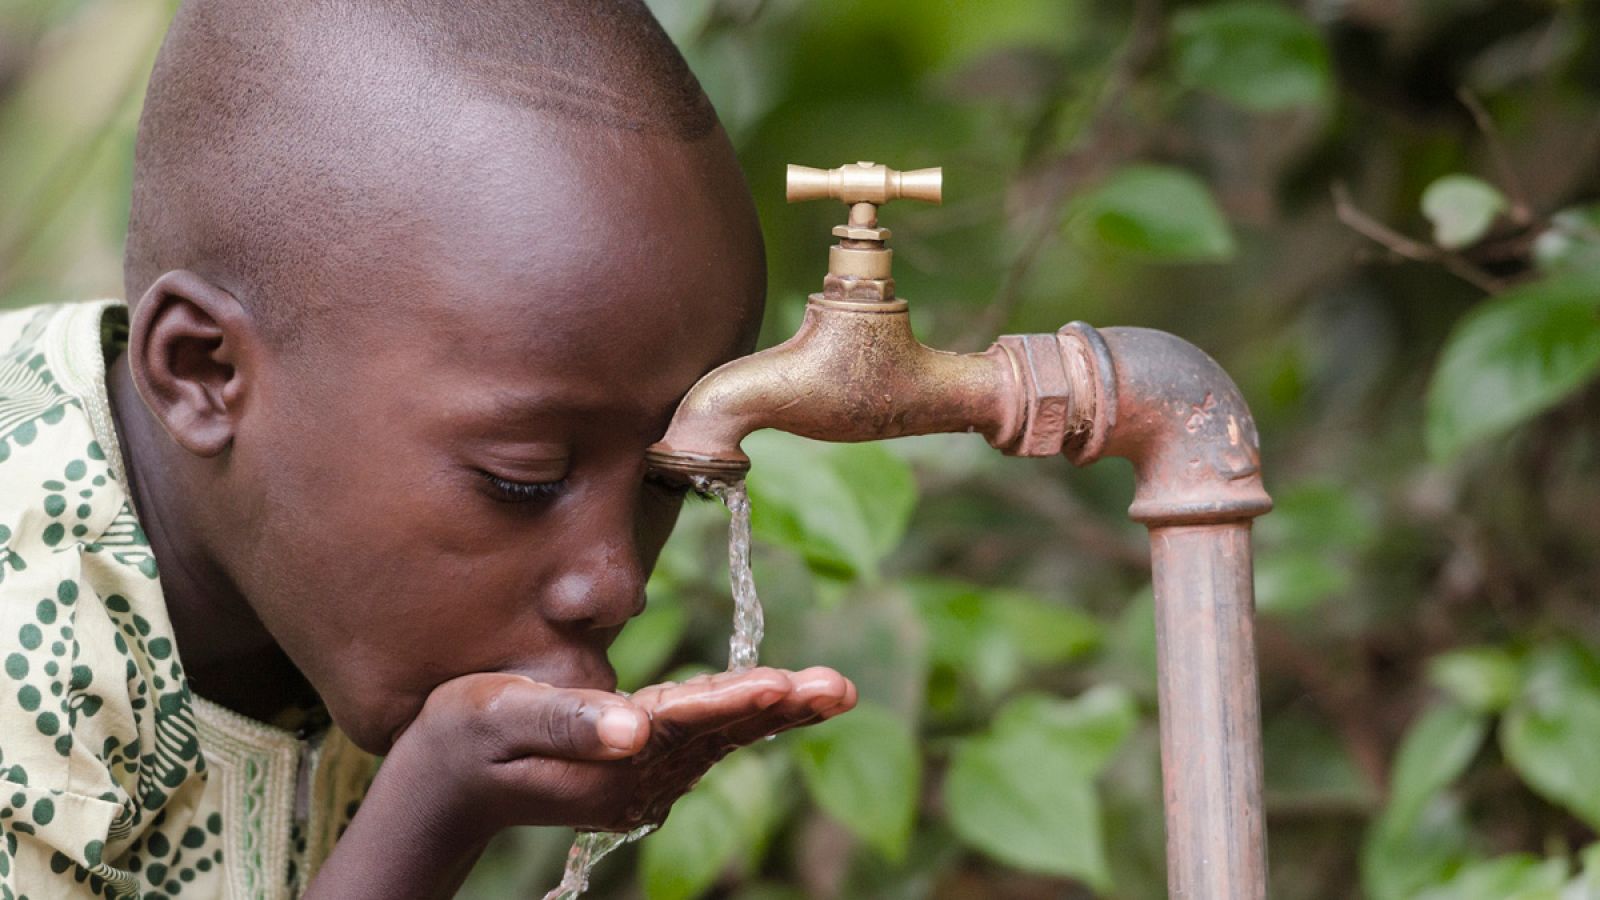 Un niño africano bebe en un grifo agua no potable